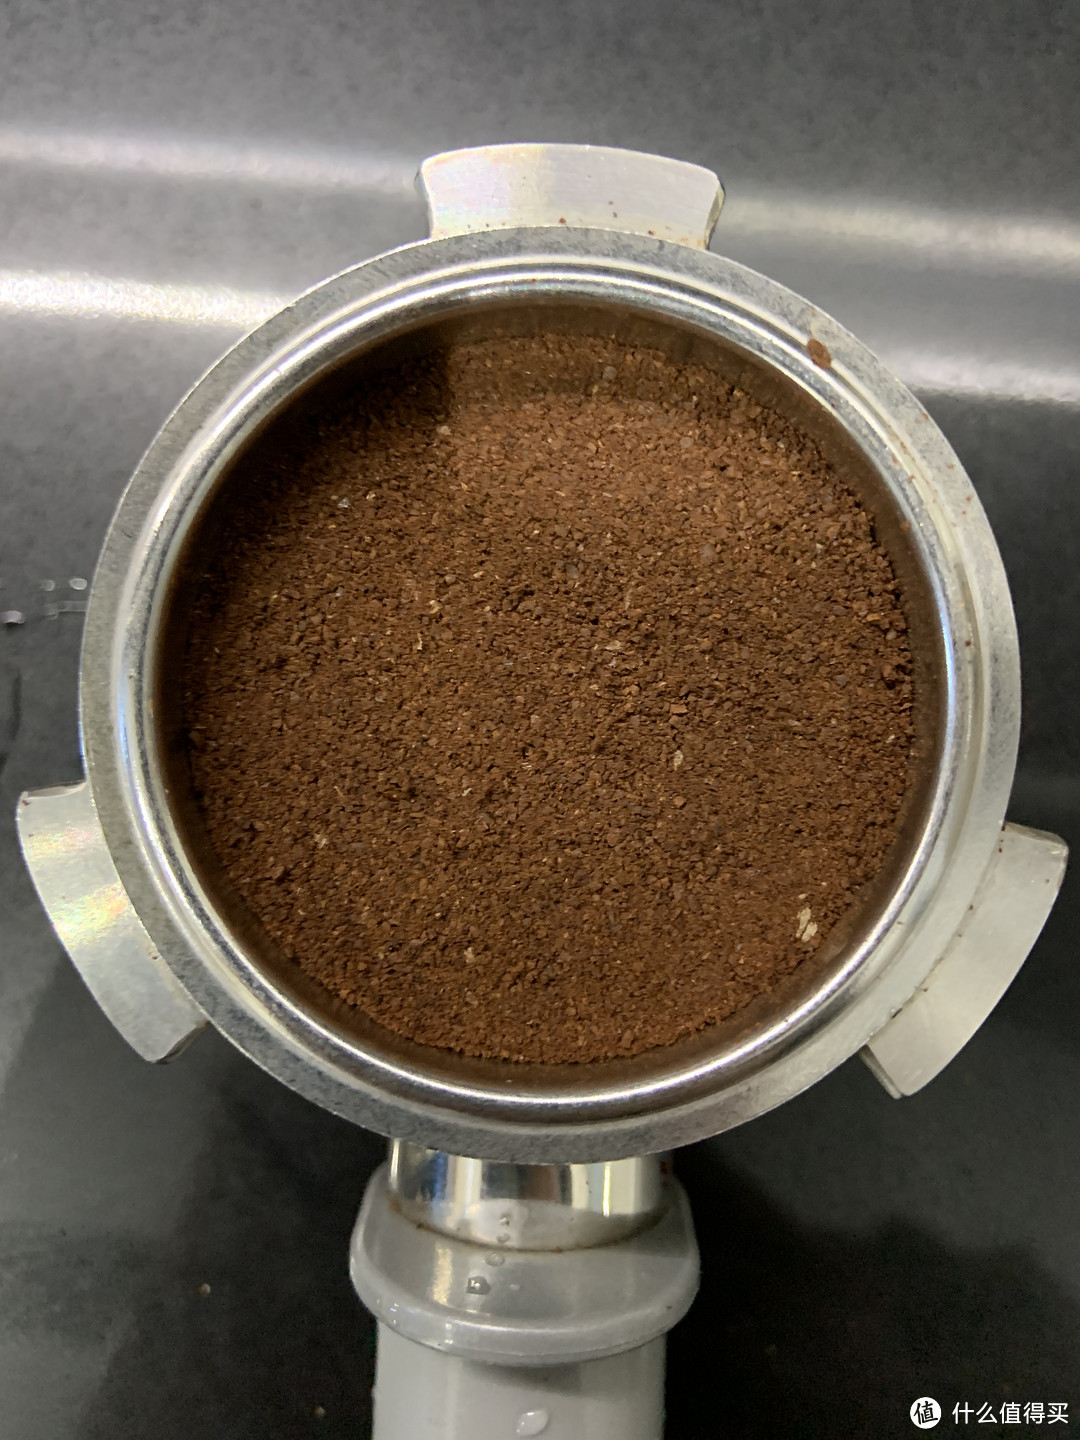 这台颜值爆表的咖啡机做出来的咖啡究竟怎么样？